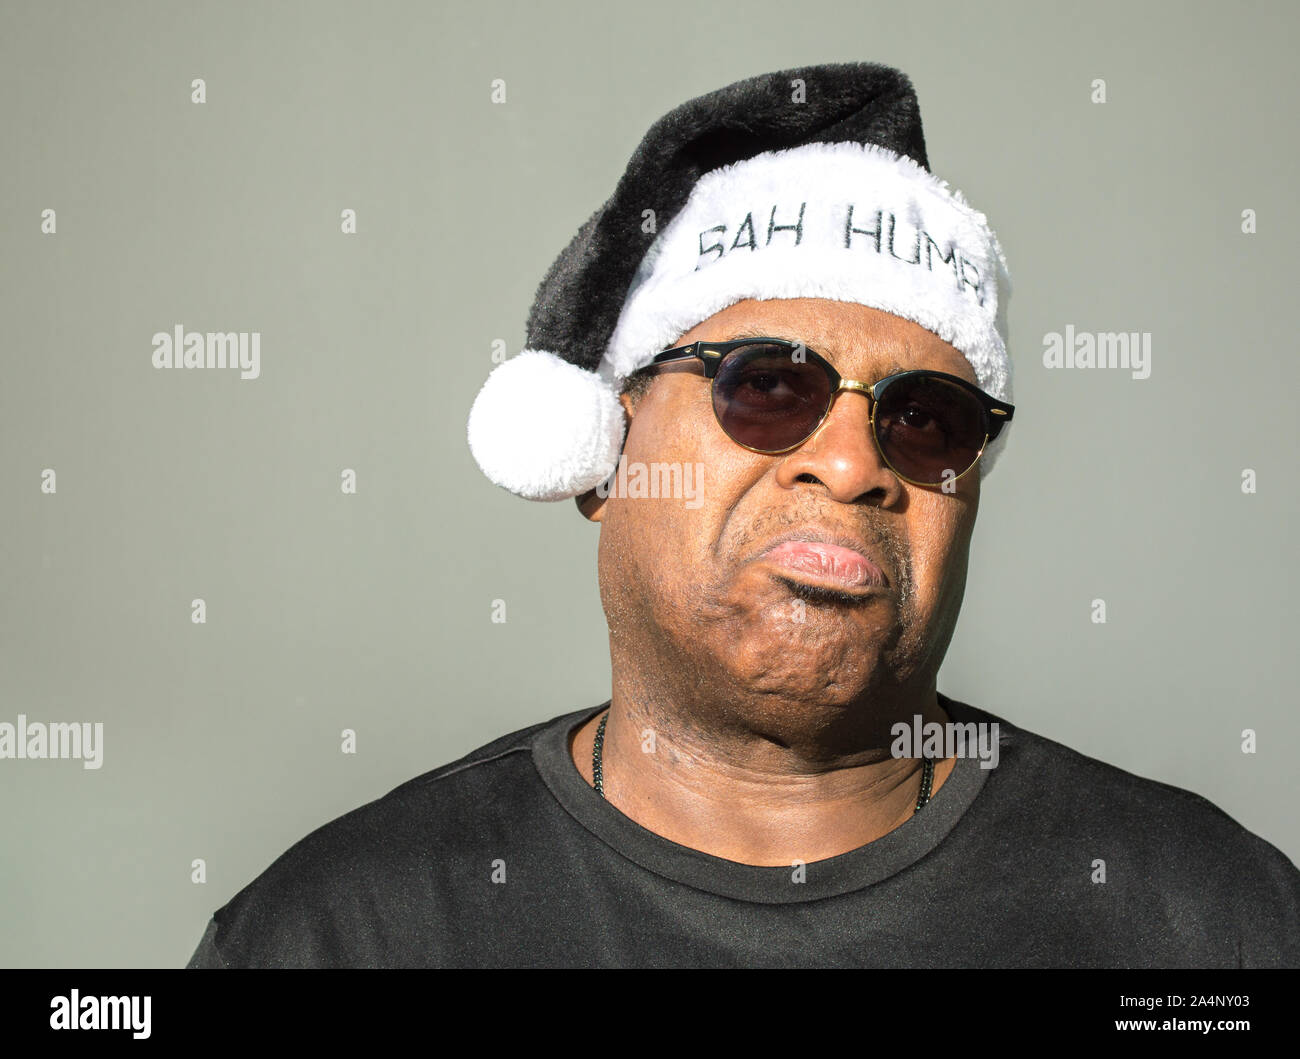 Un âge moyen de froncer African American man wearing a black and white Santa Claus hat dire Bah blague sur elle sur un fond uni Banque D'Images